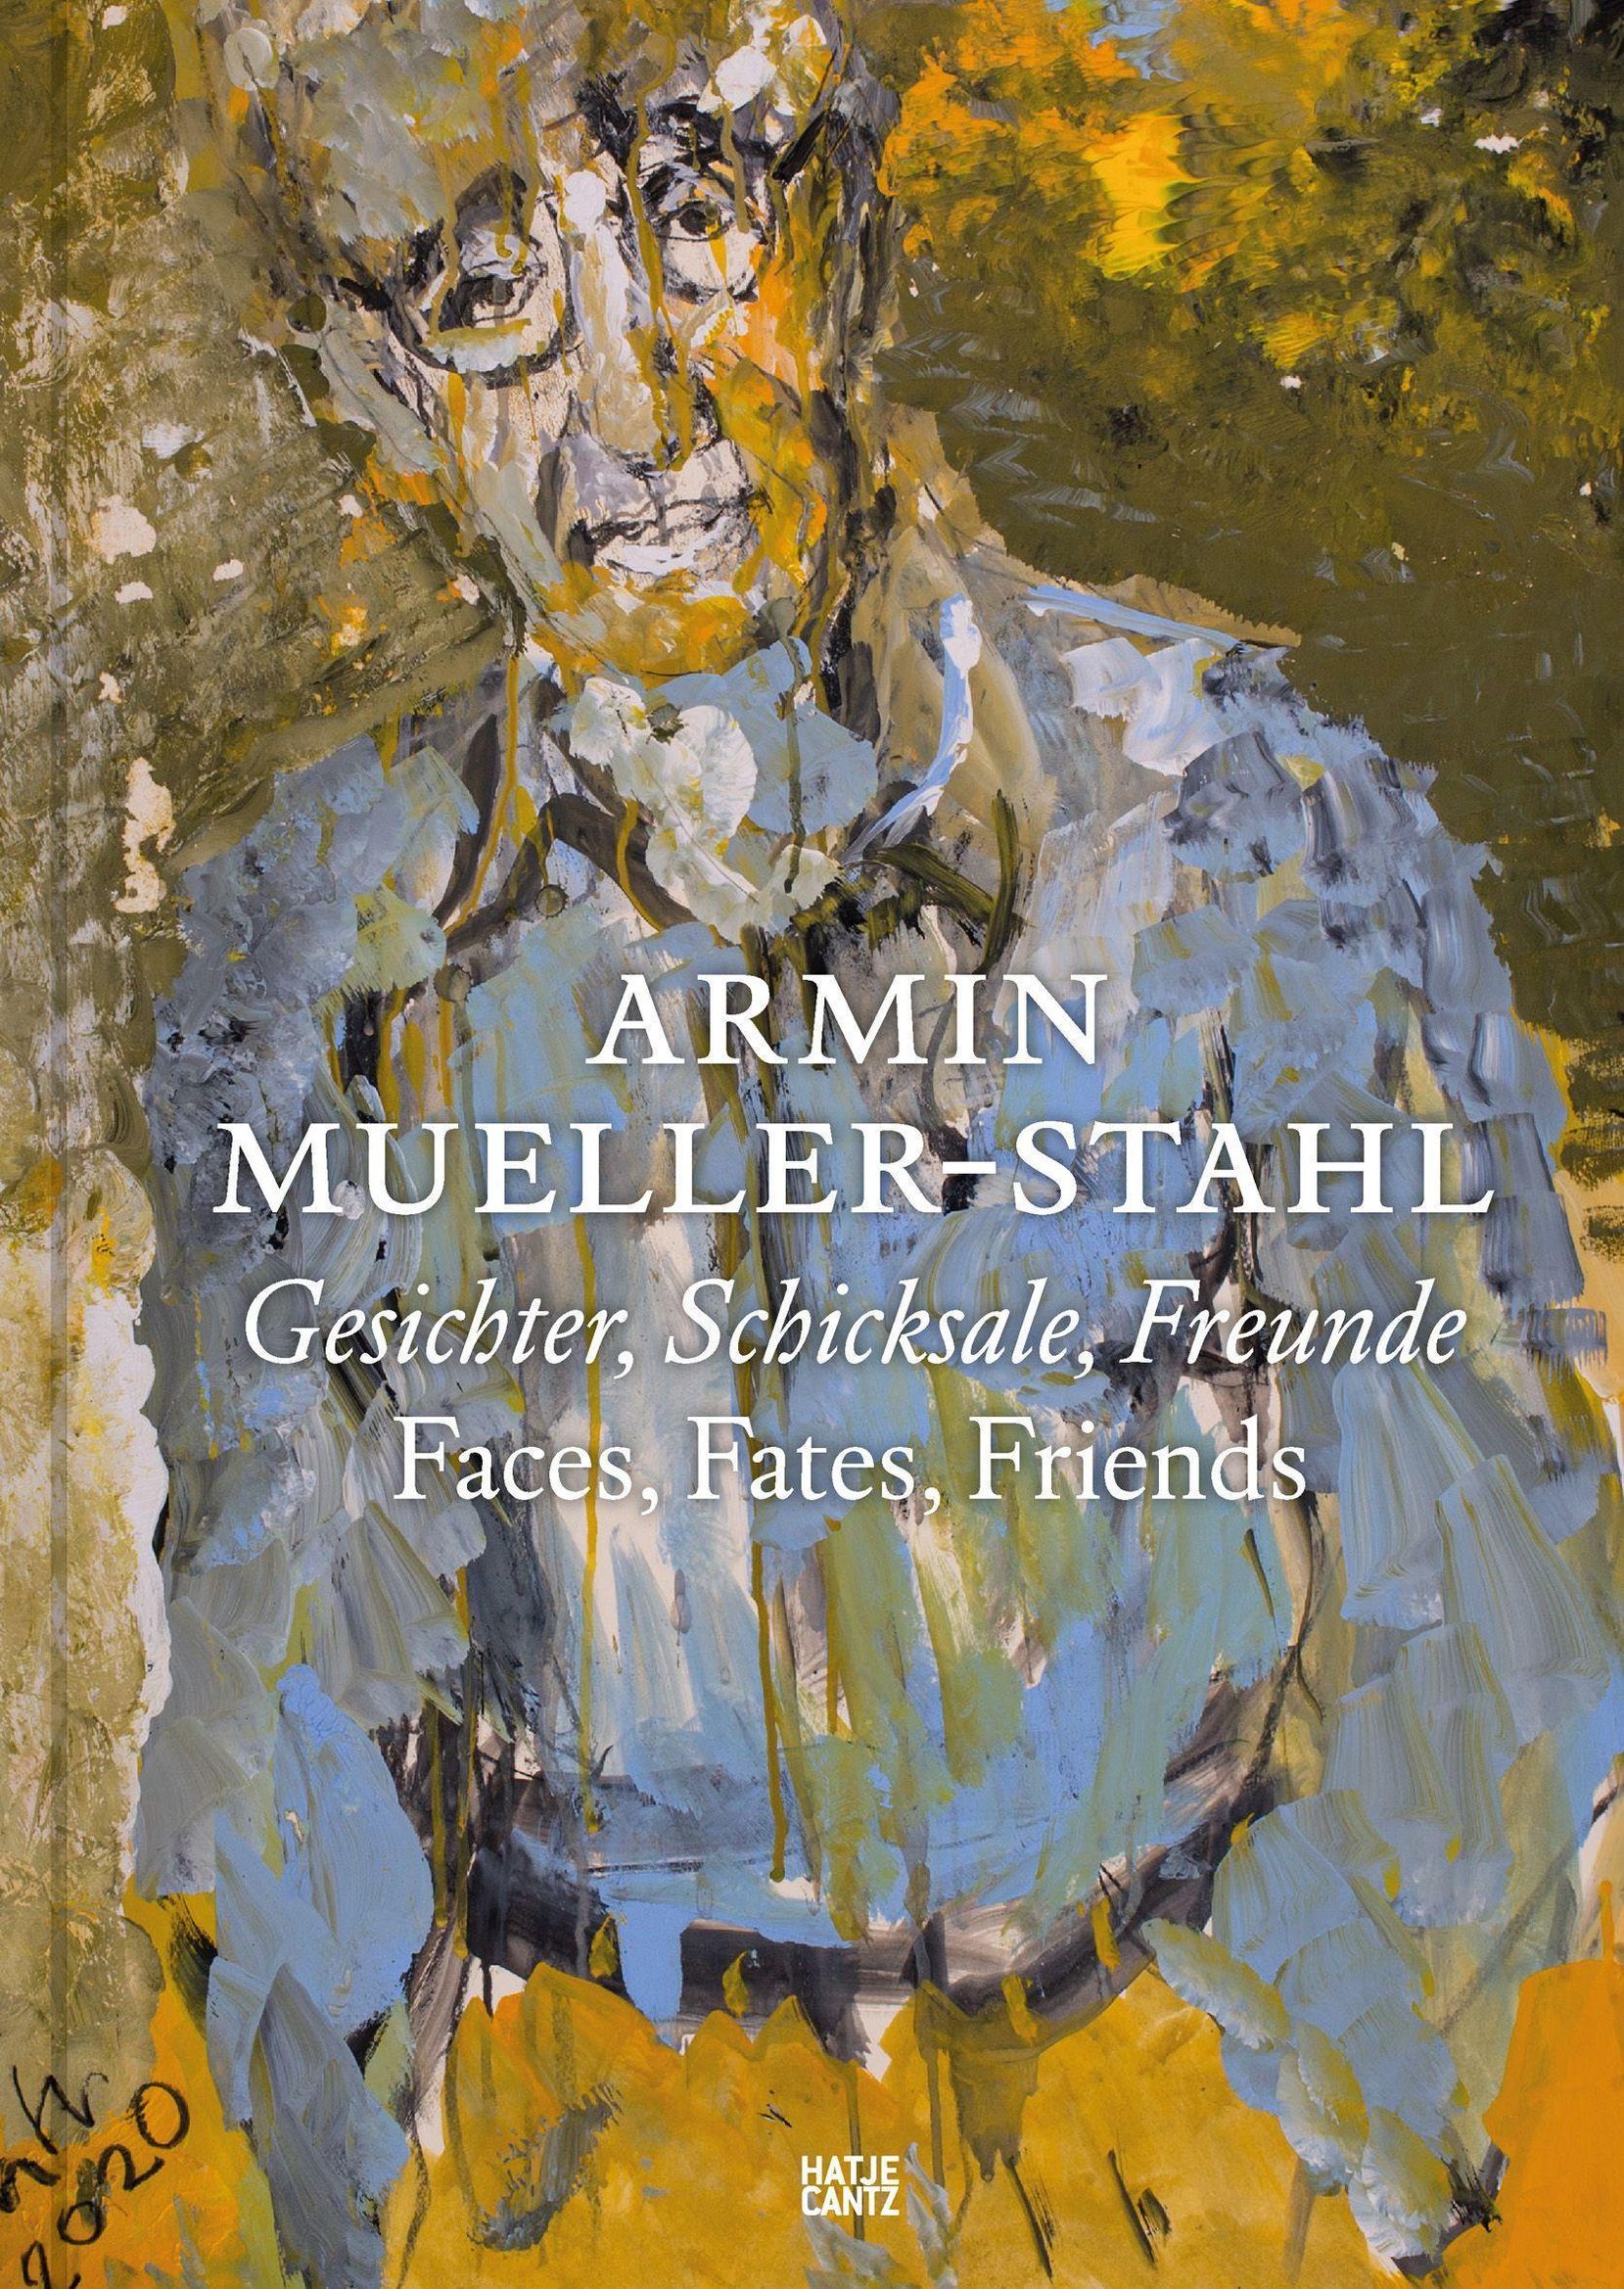 Armin Mueller-Stahl Buch von Björn Engholm versandkostenfrei - Weltbild.ch